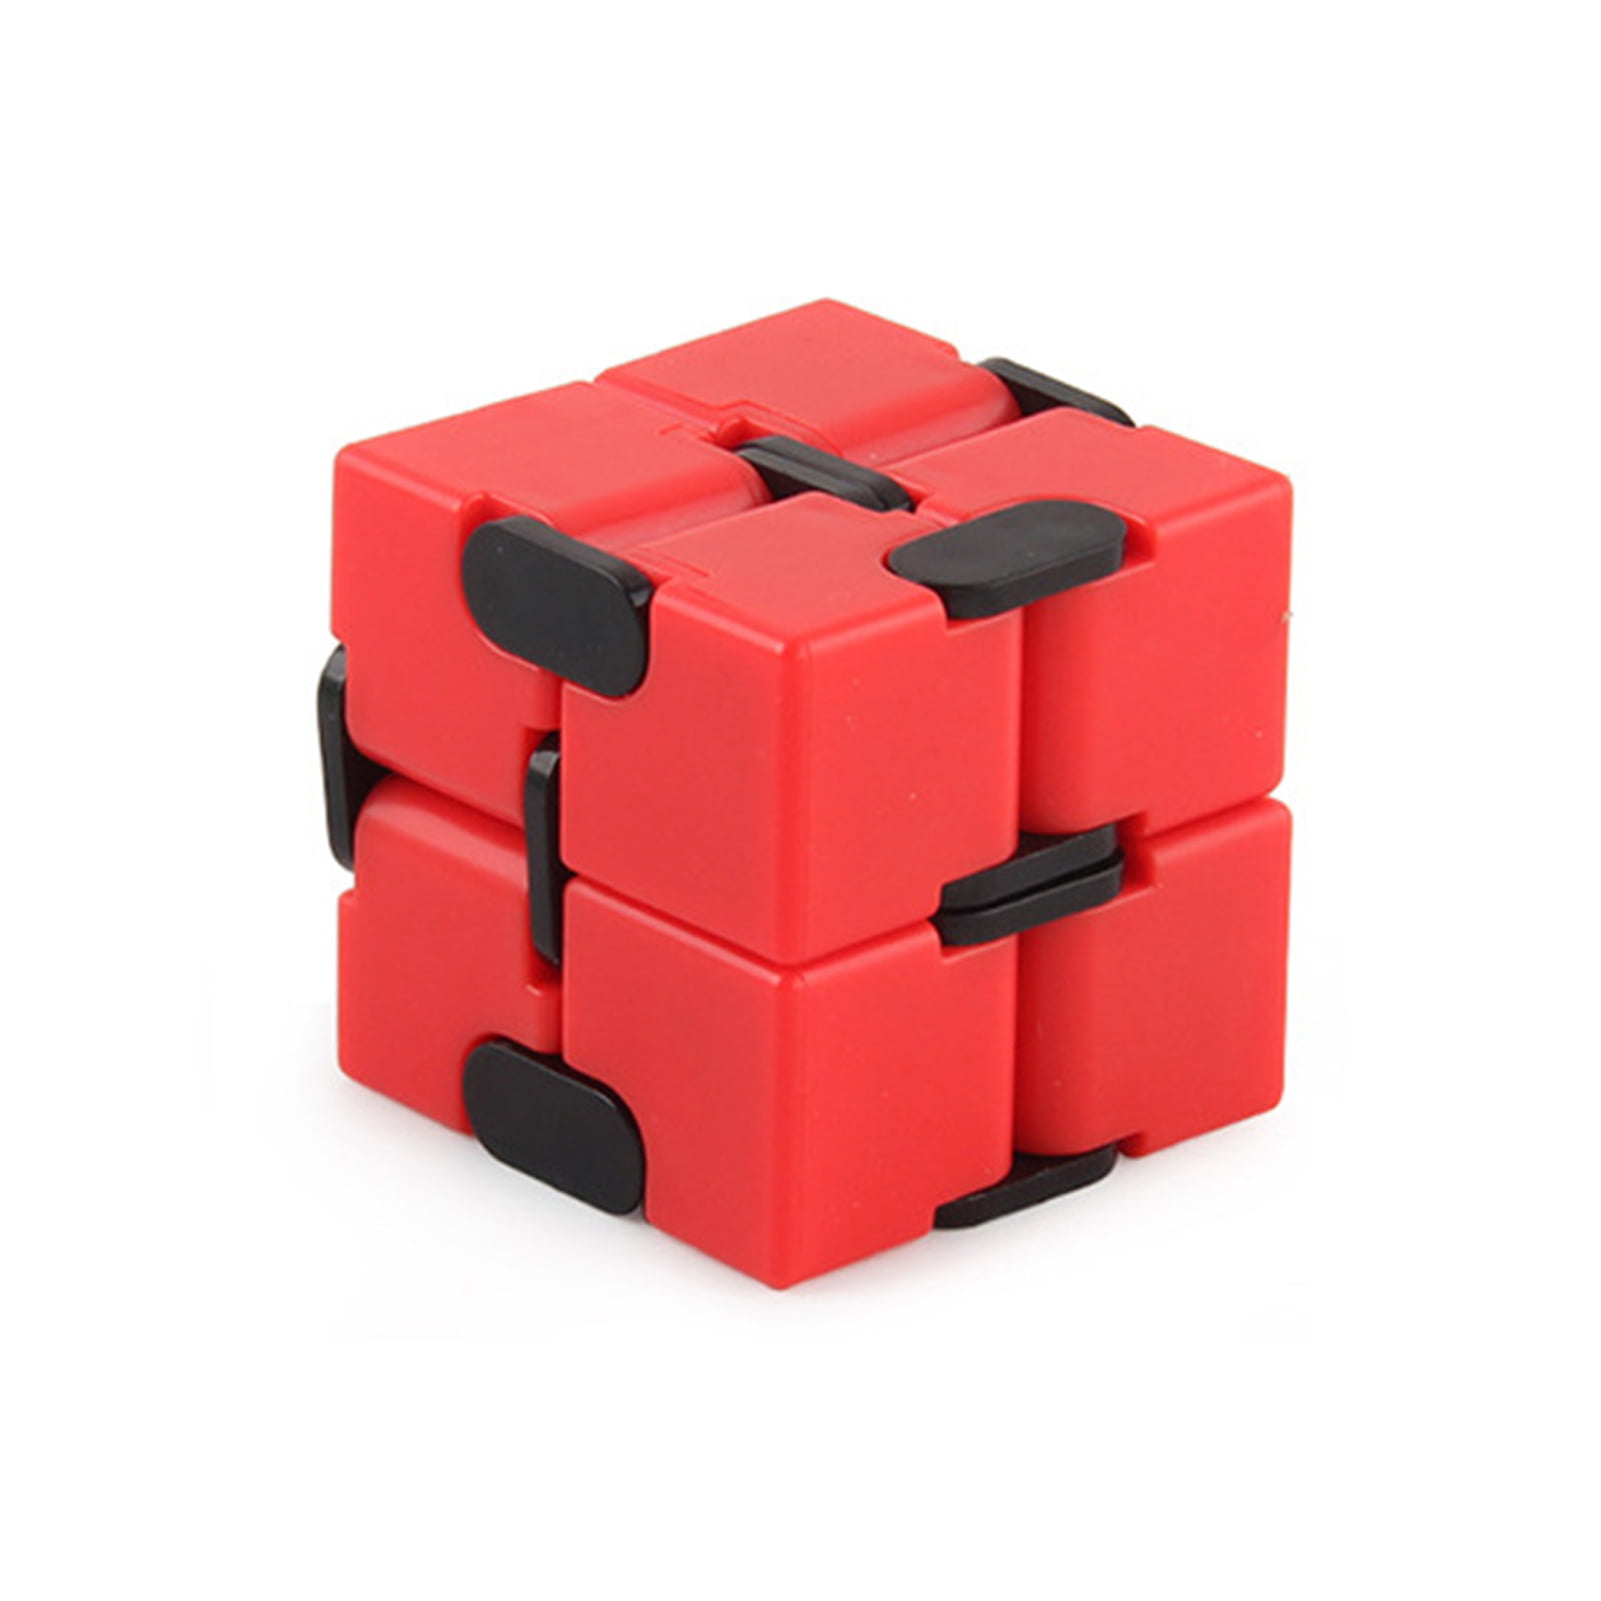 Cube fun. Infinity Cube. Т куб Инфинити. Инфинити куб игрушка.